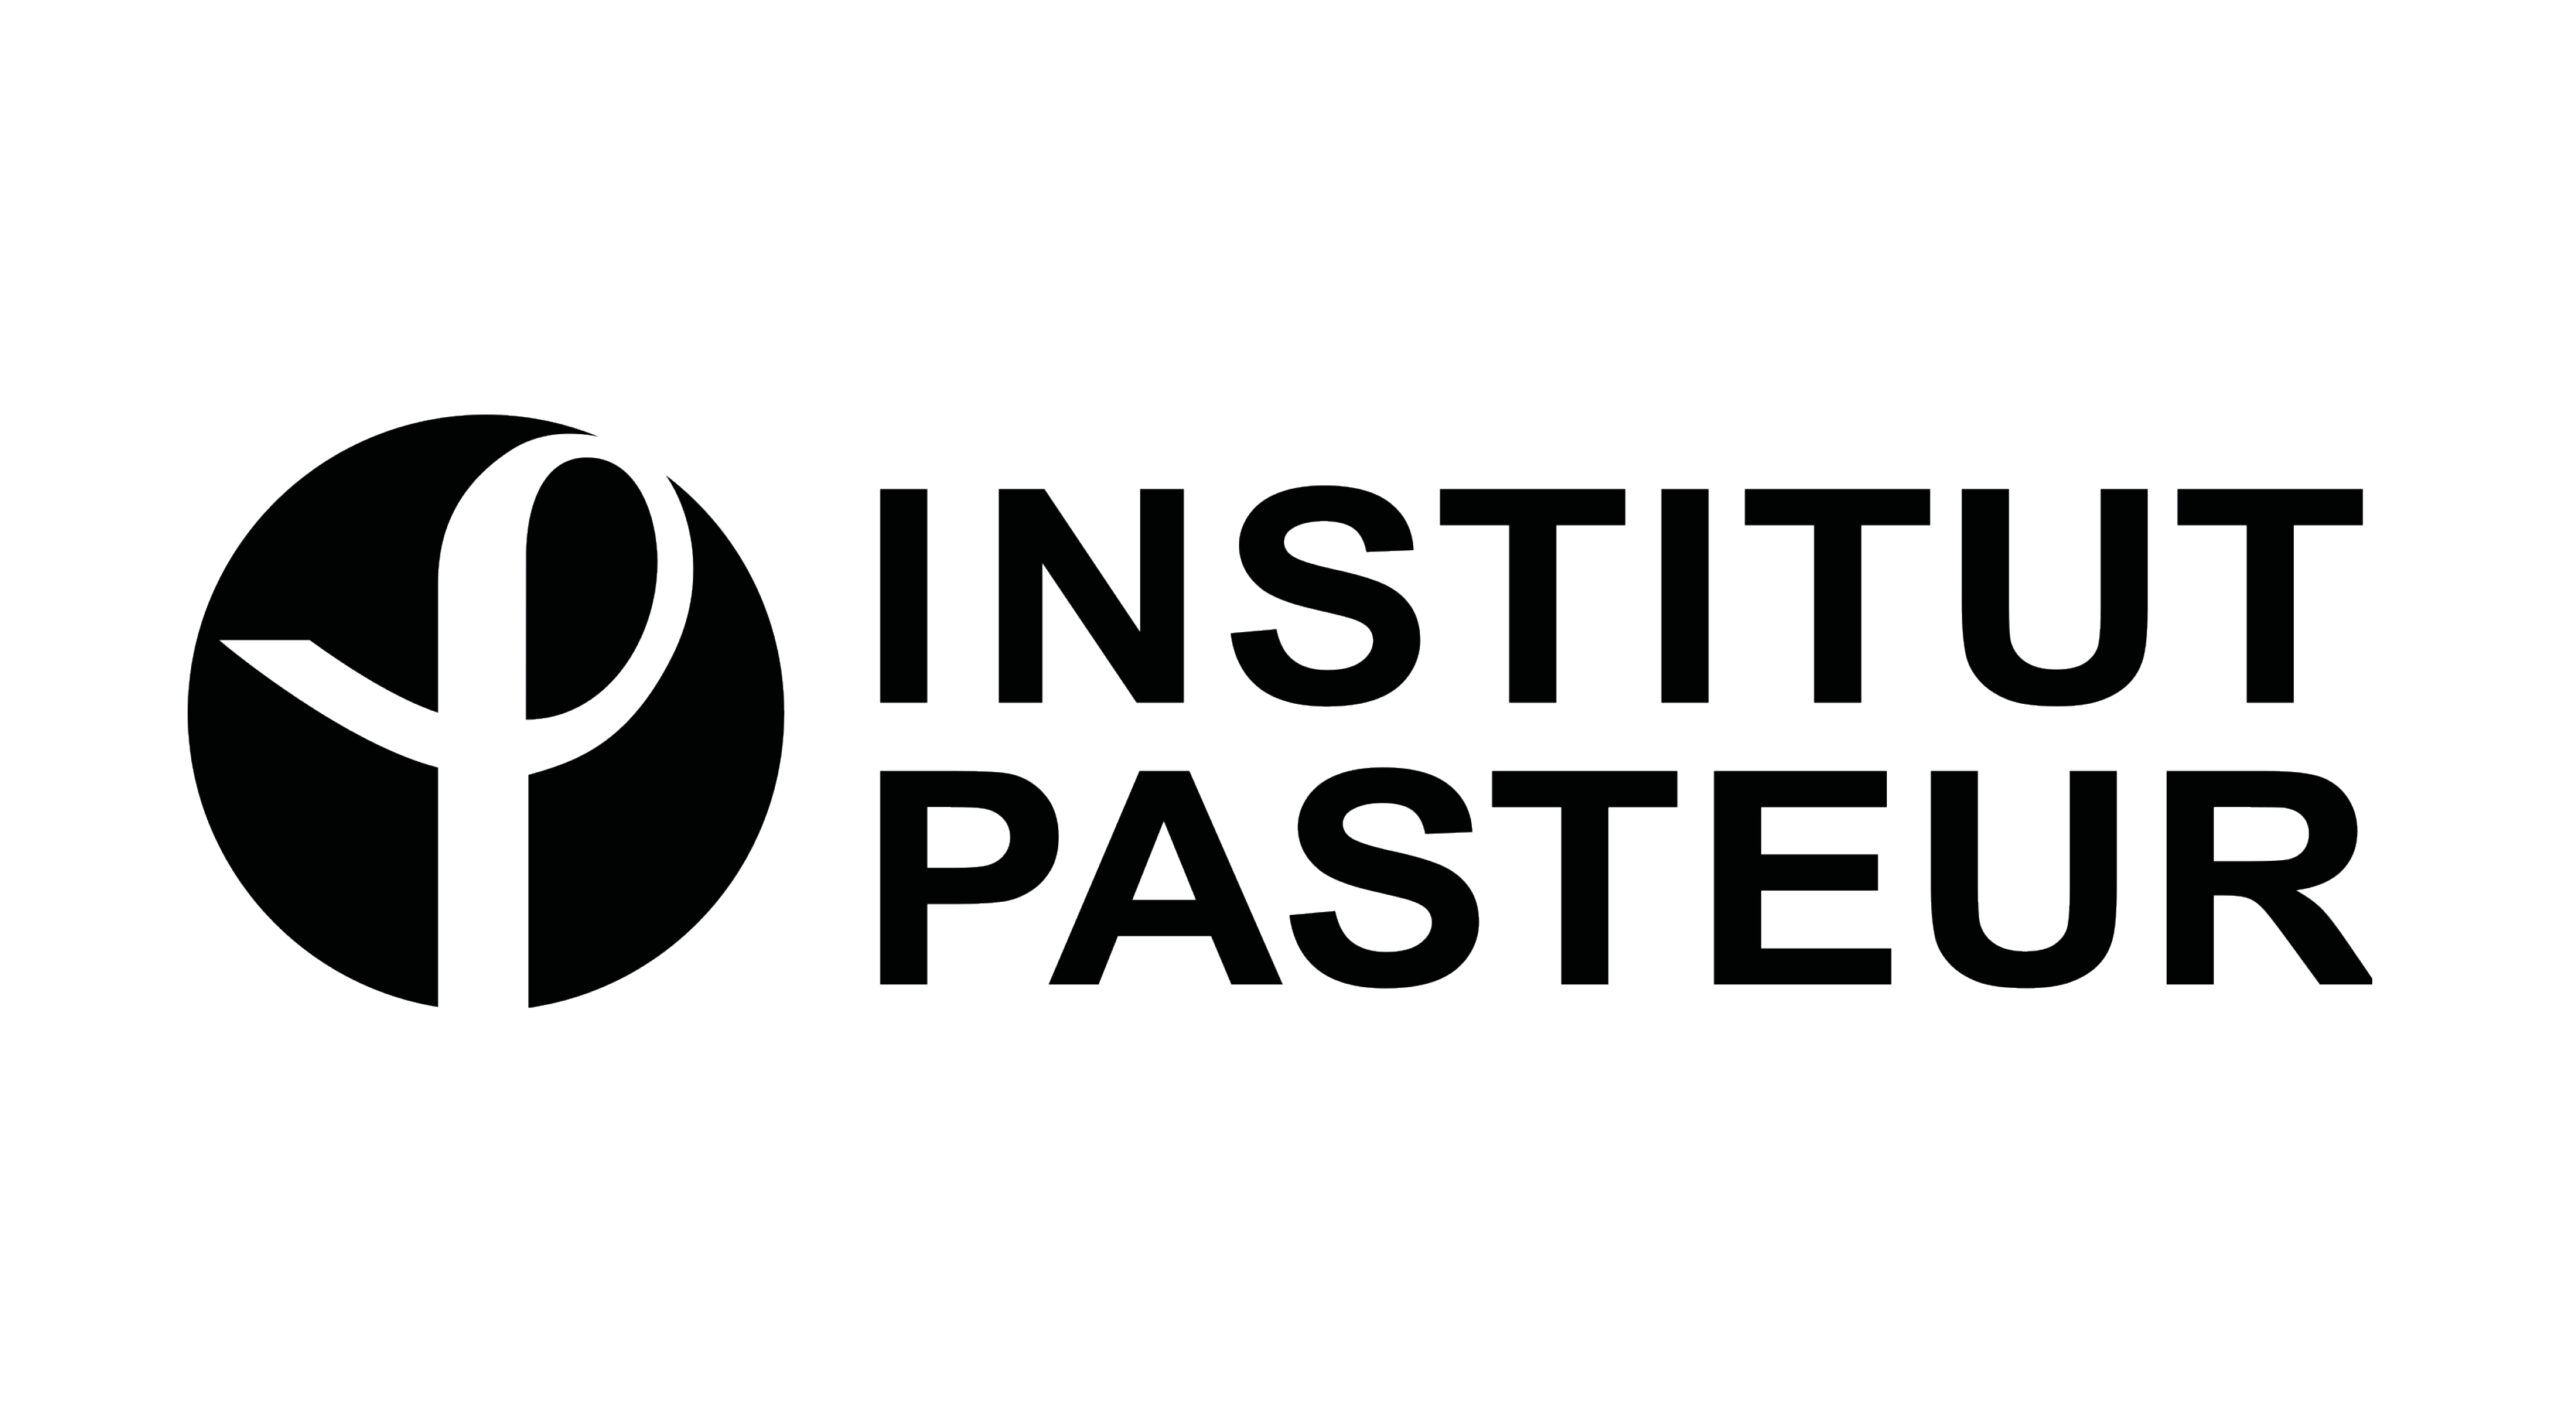 Logo Institut Pasteur